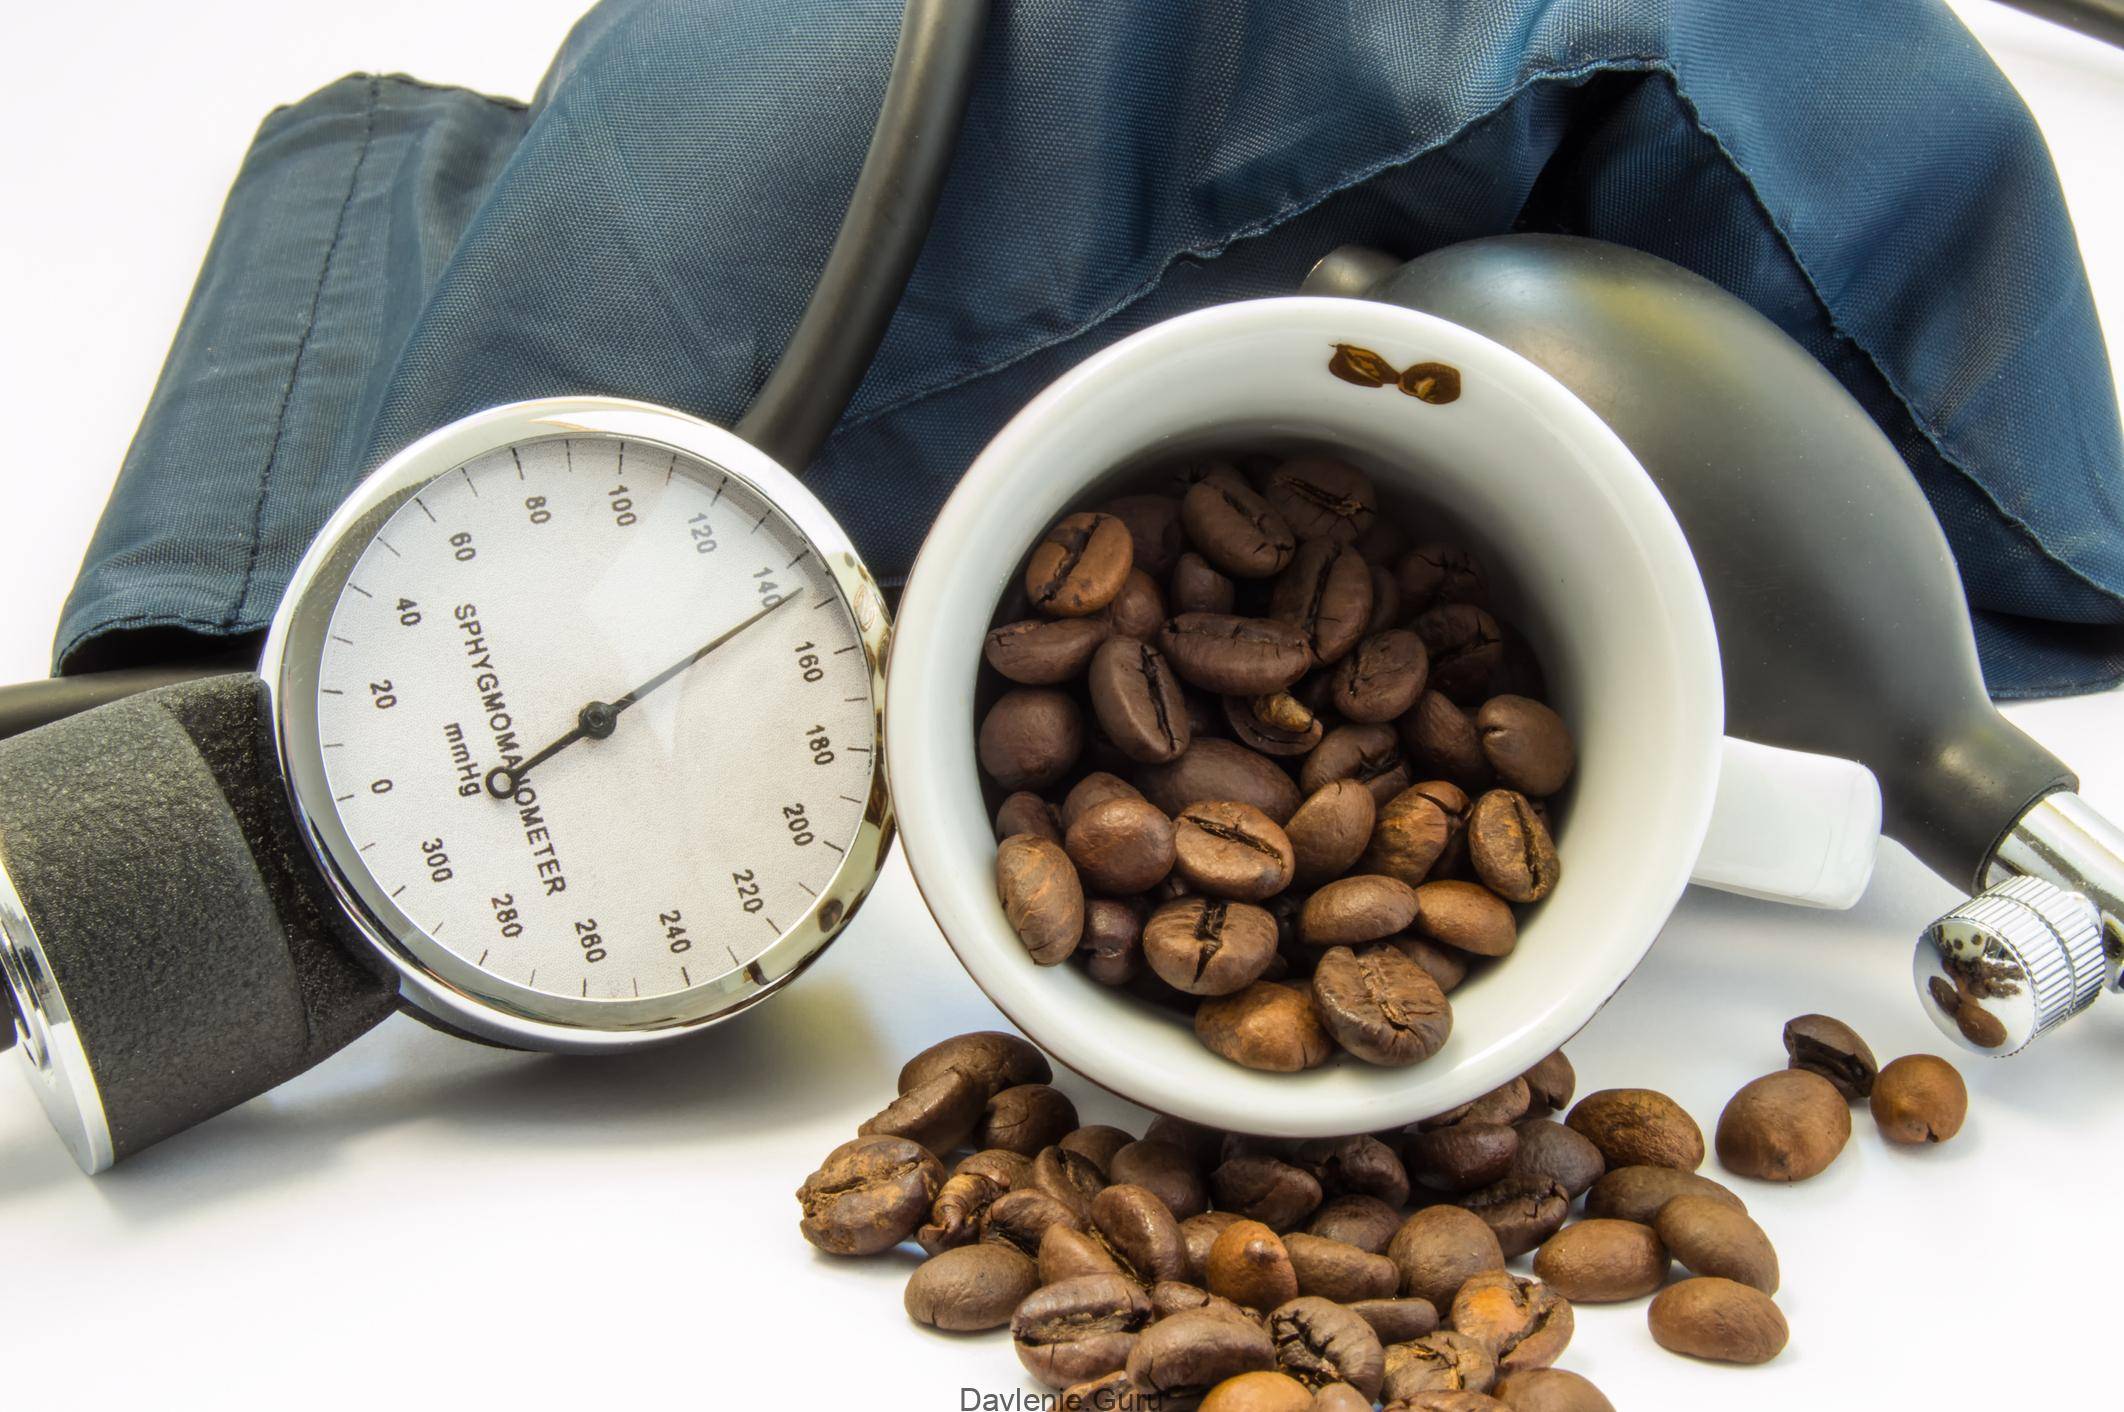 11 фактов о пользе растворимого кофе для здоровья и возможный вред